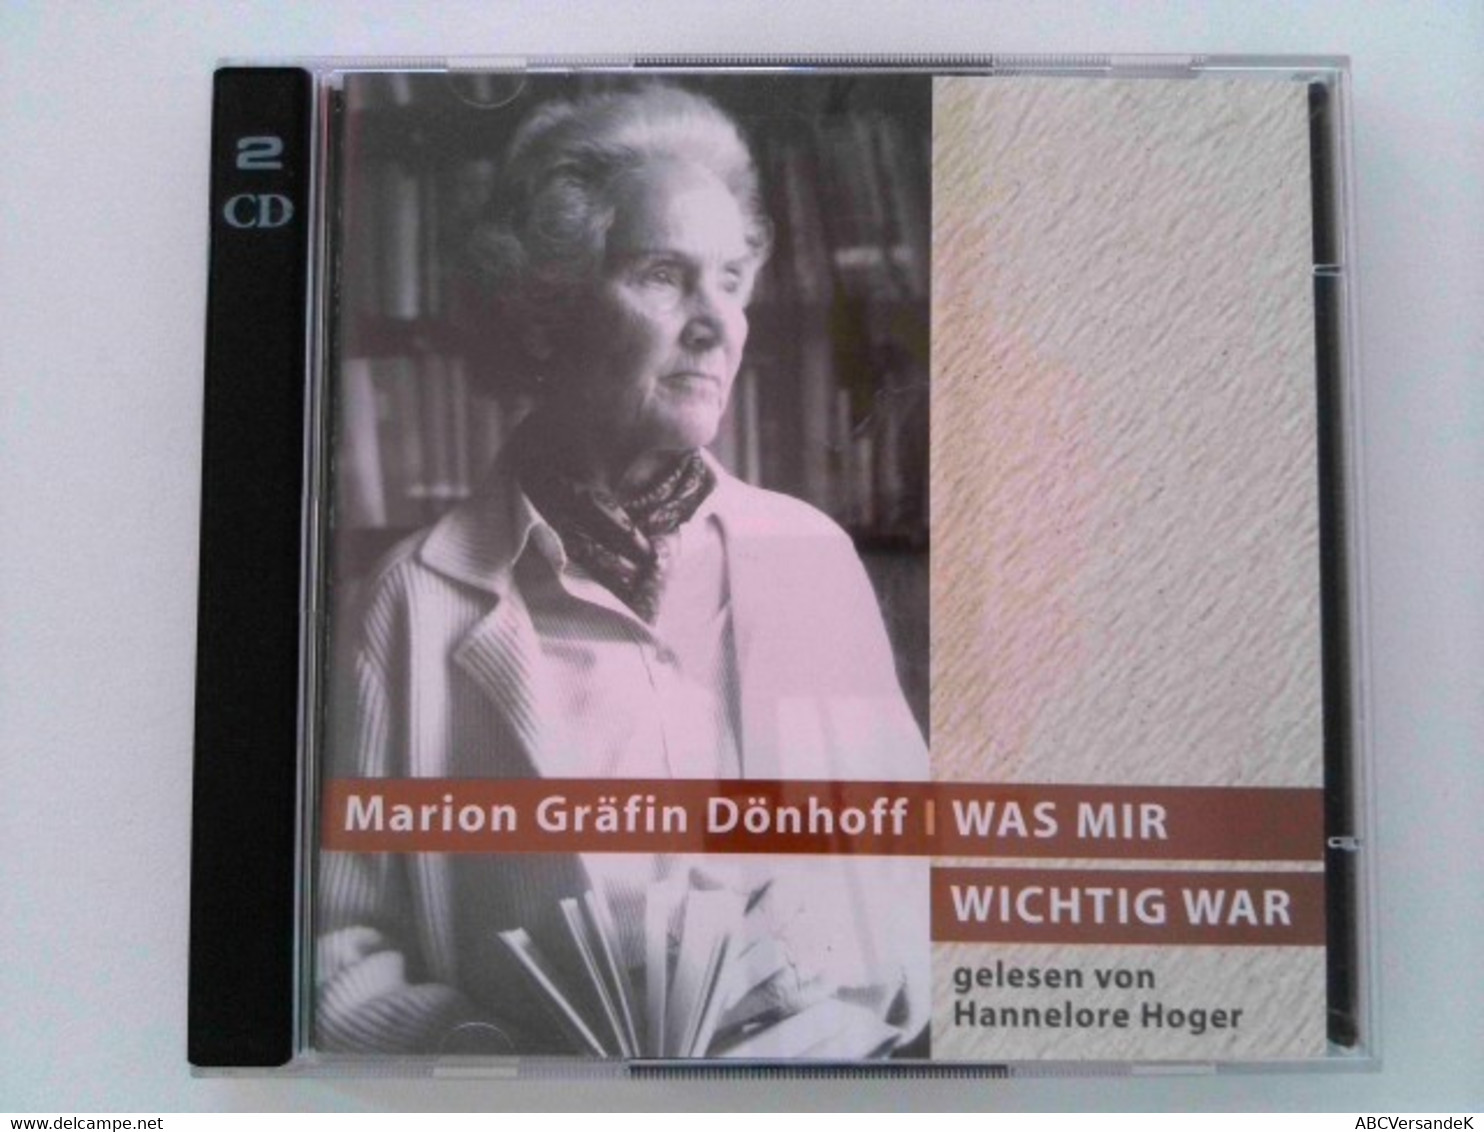 Was Mir Wichtig War - CDs